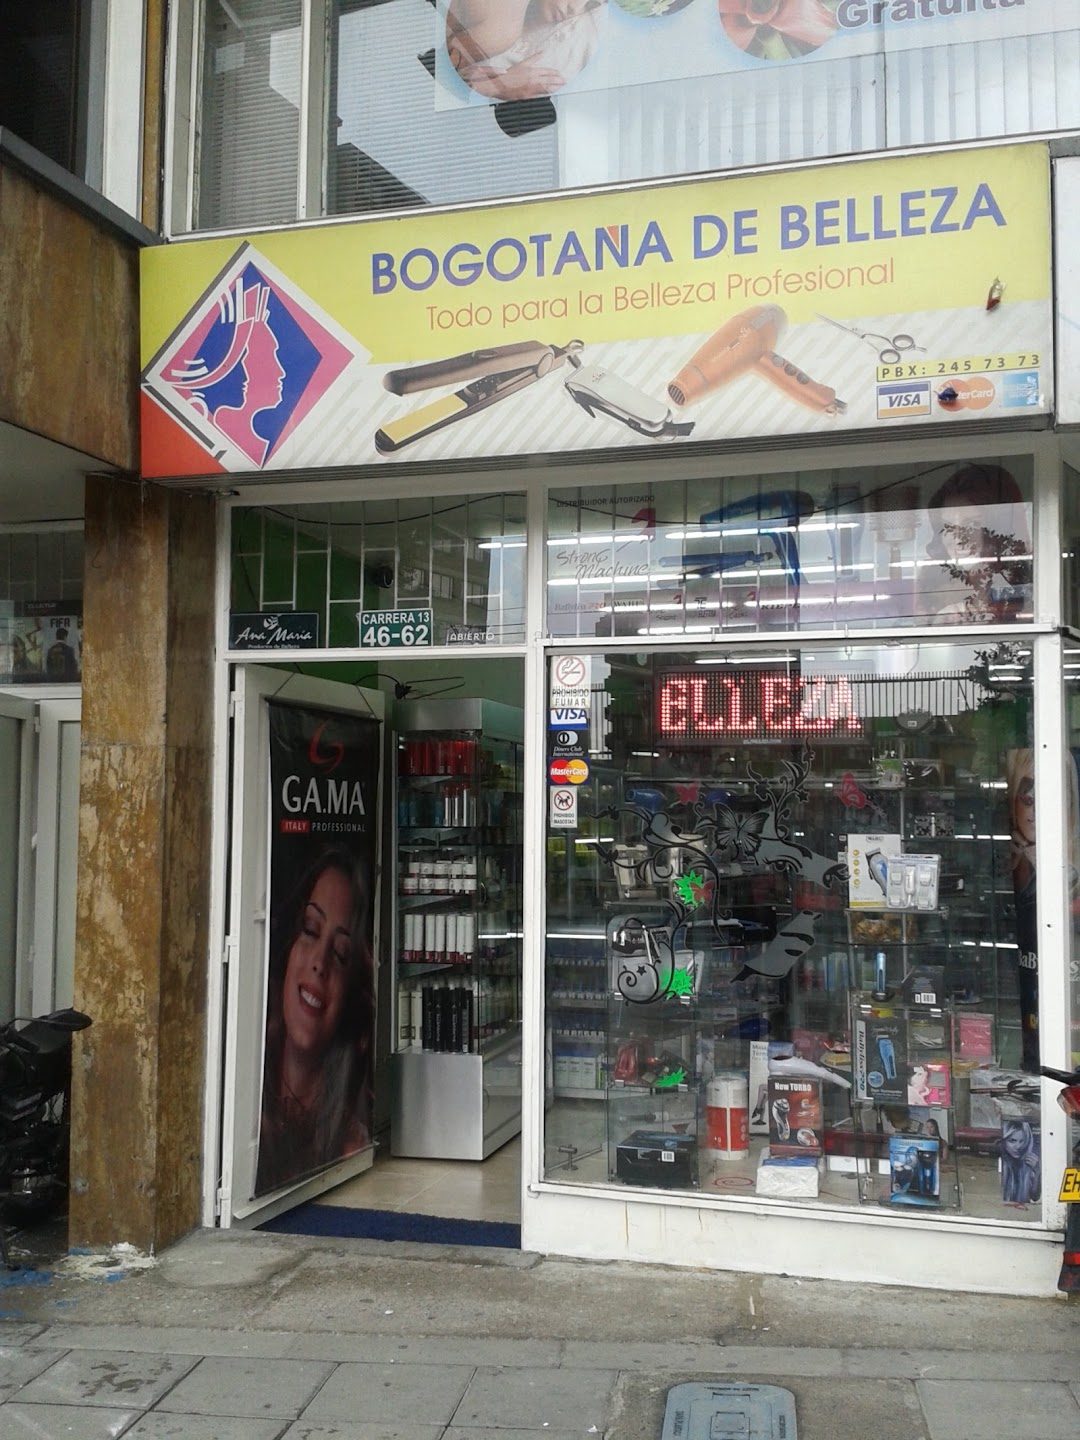 BOGOTANA DE BELLEZA